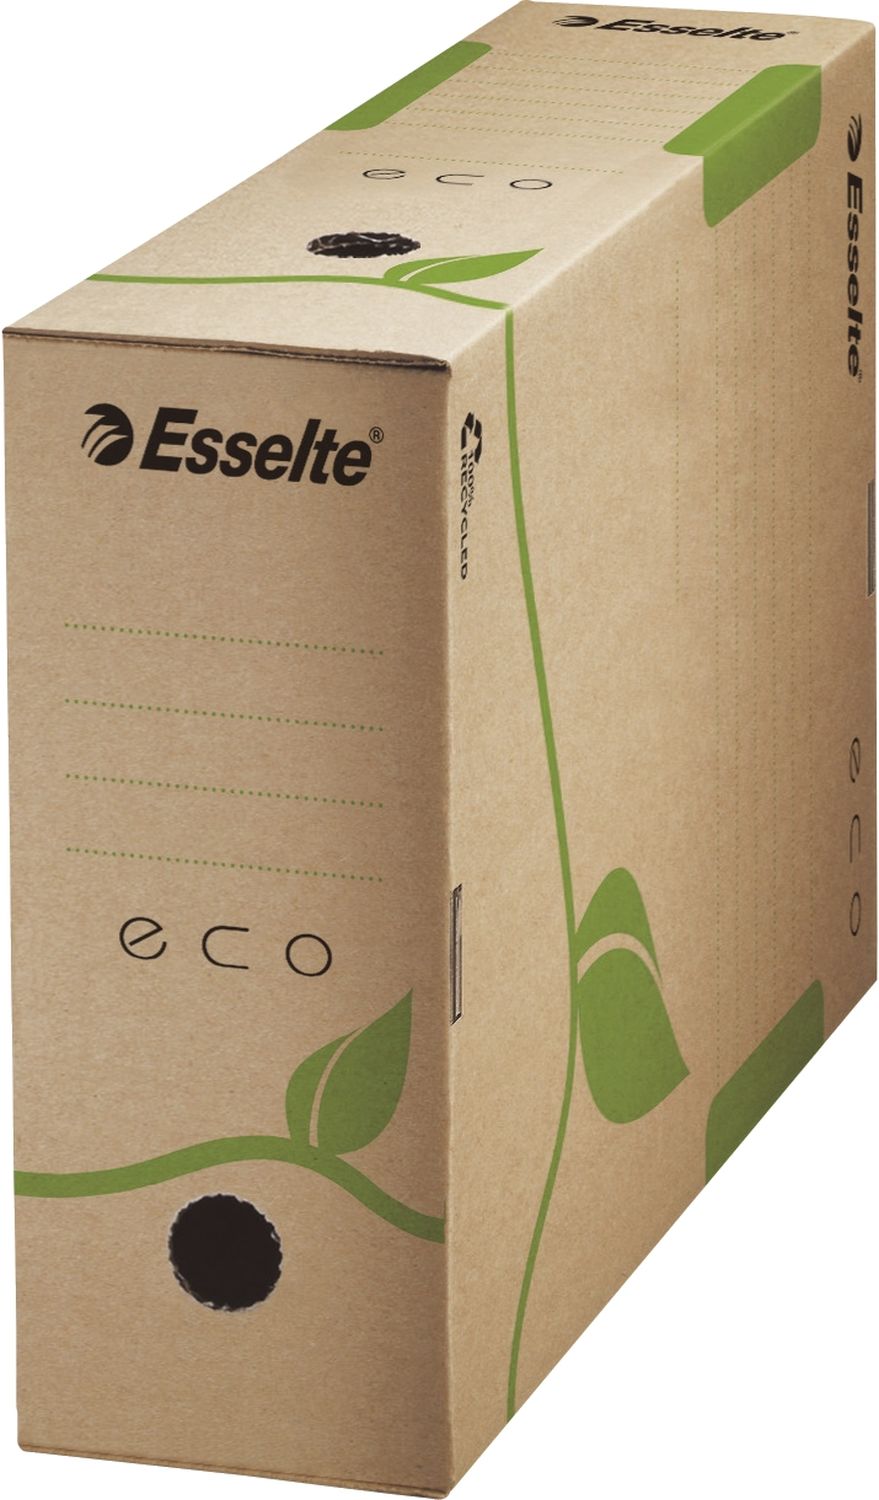 Archivschachtel Esselte Eco 623917, DIN A4, Rückenbreite 100 mm, 100% Recyclingkarton, braun